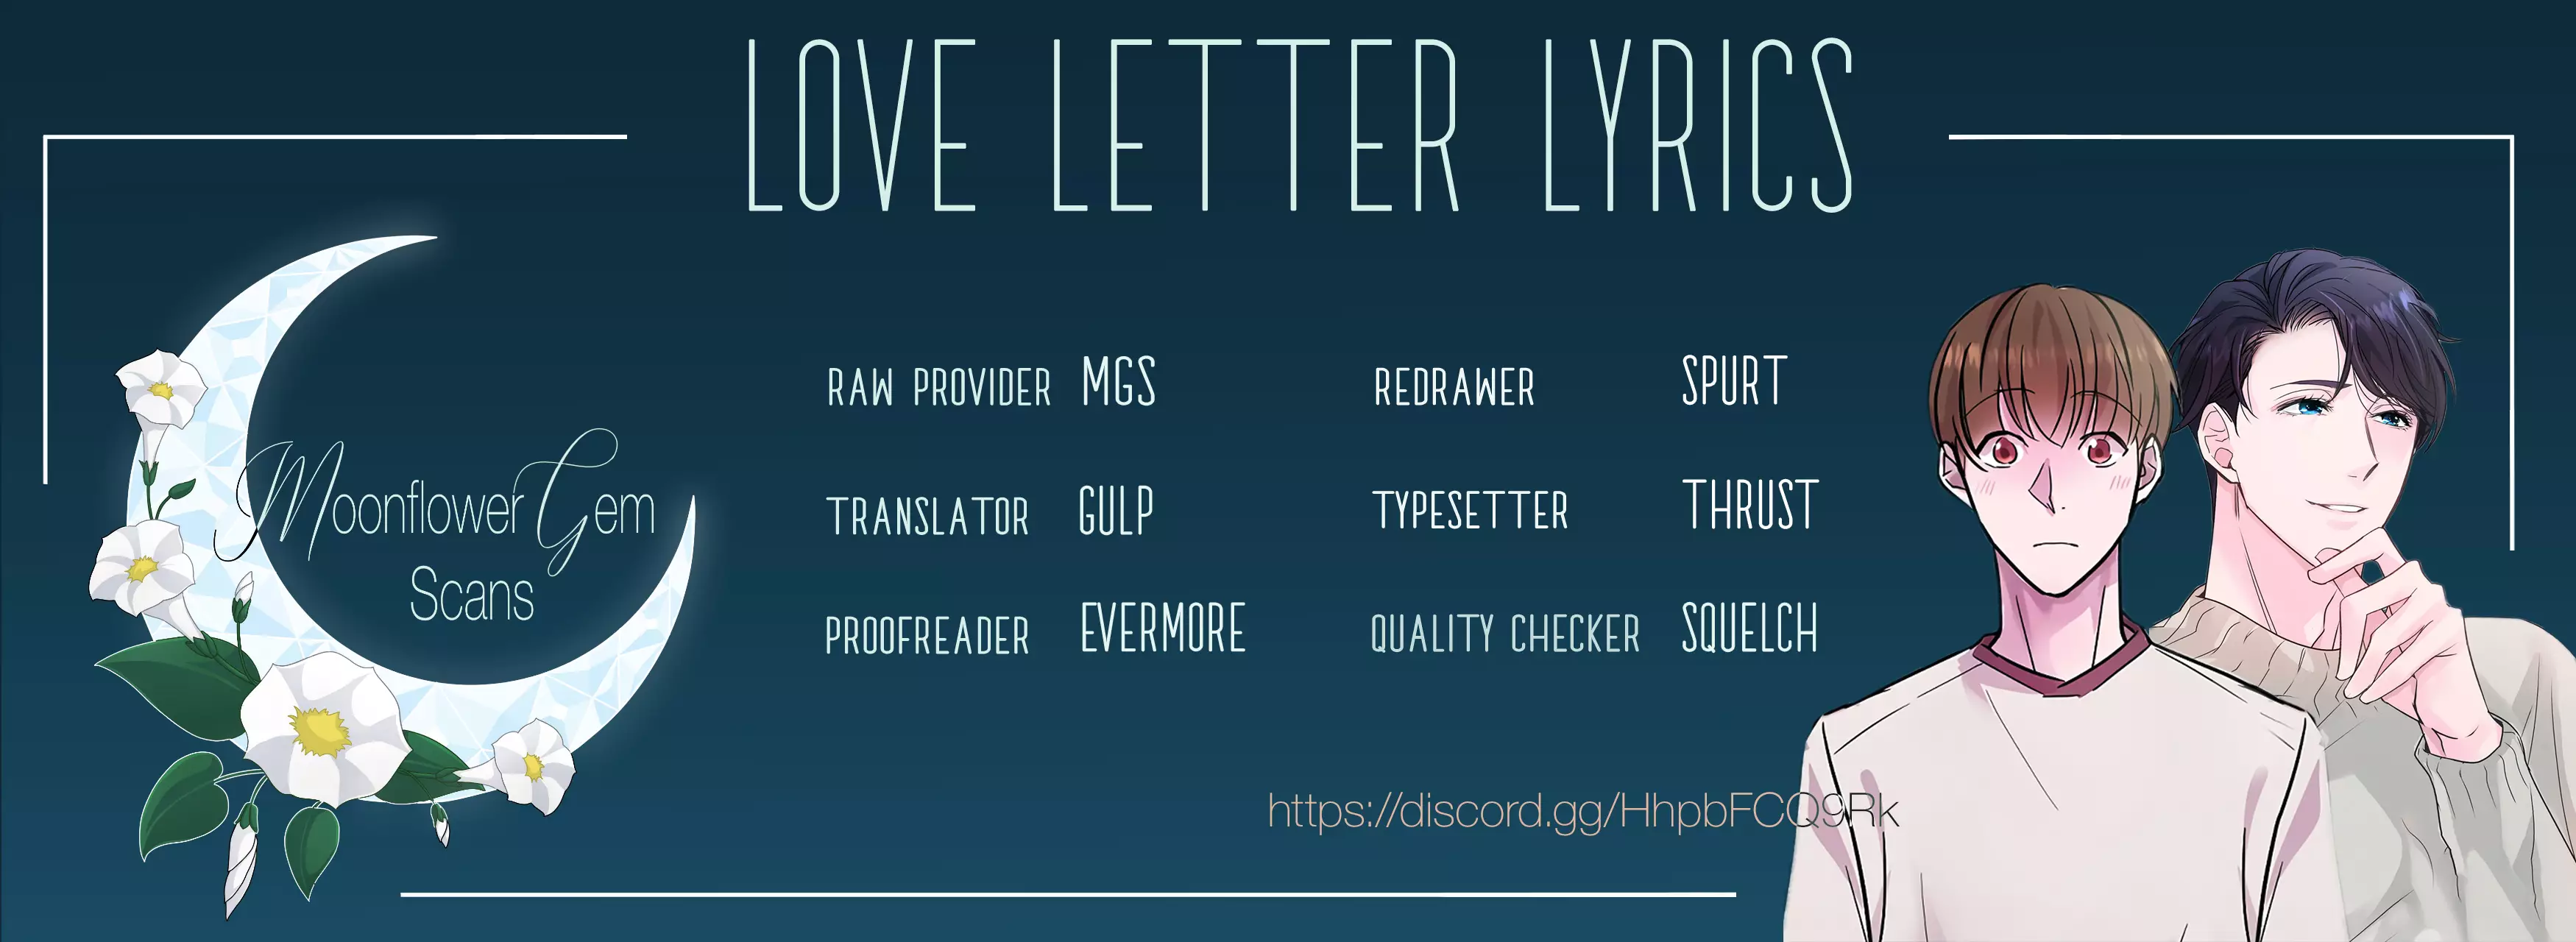 Love Letter Lyrics - 4 page 1-1d38ca6d